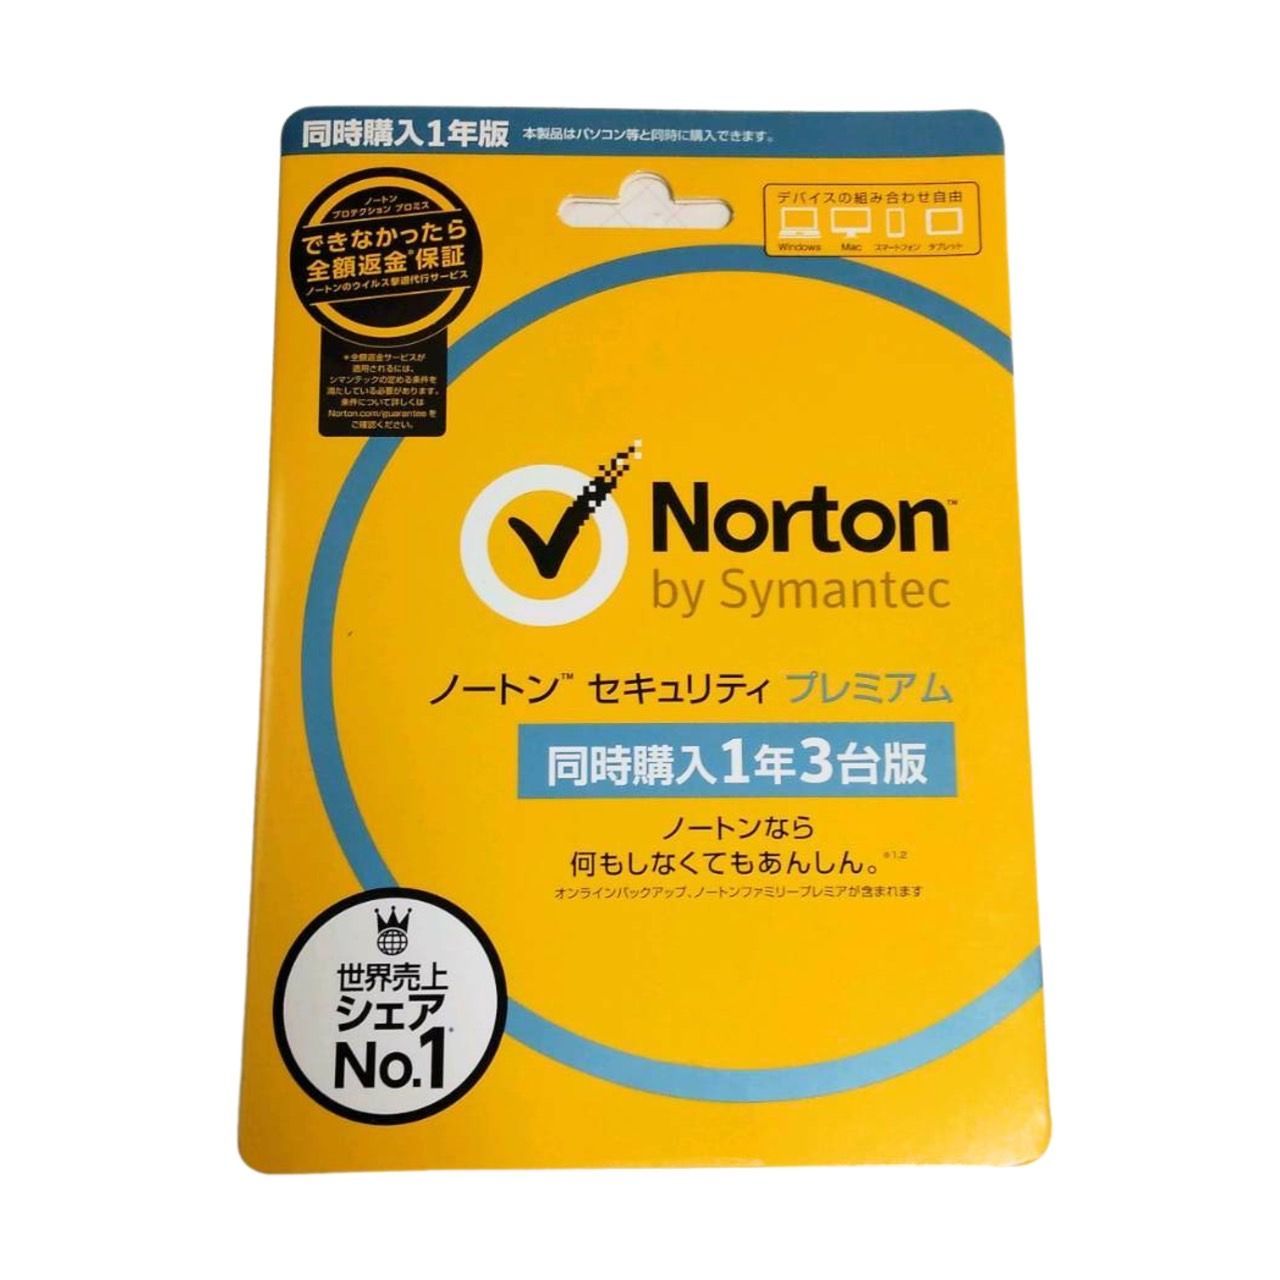 Norton ノートン インターネット セキュリティ (3年 1台用)Windows版